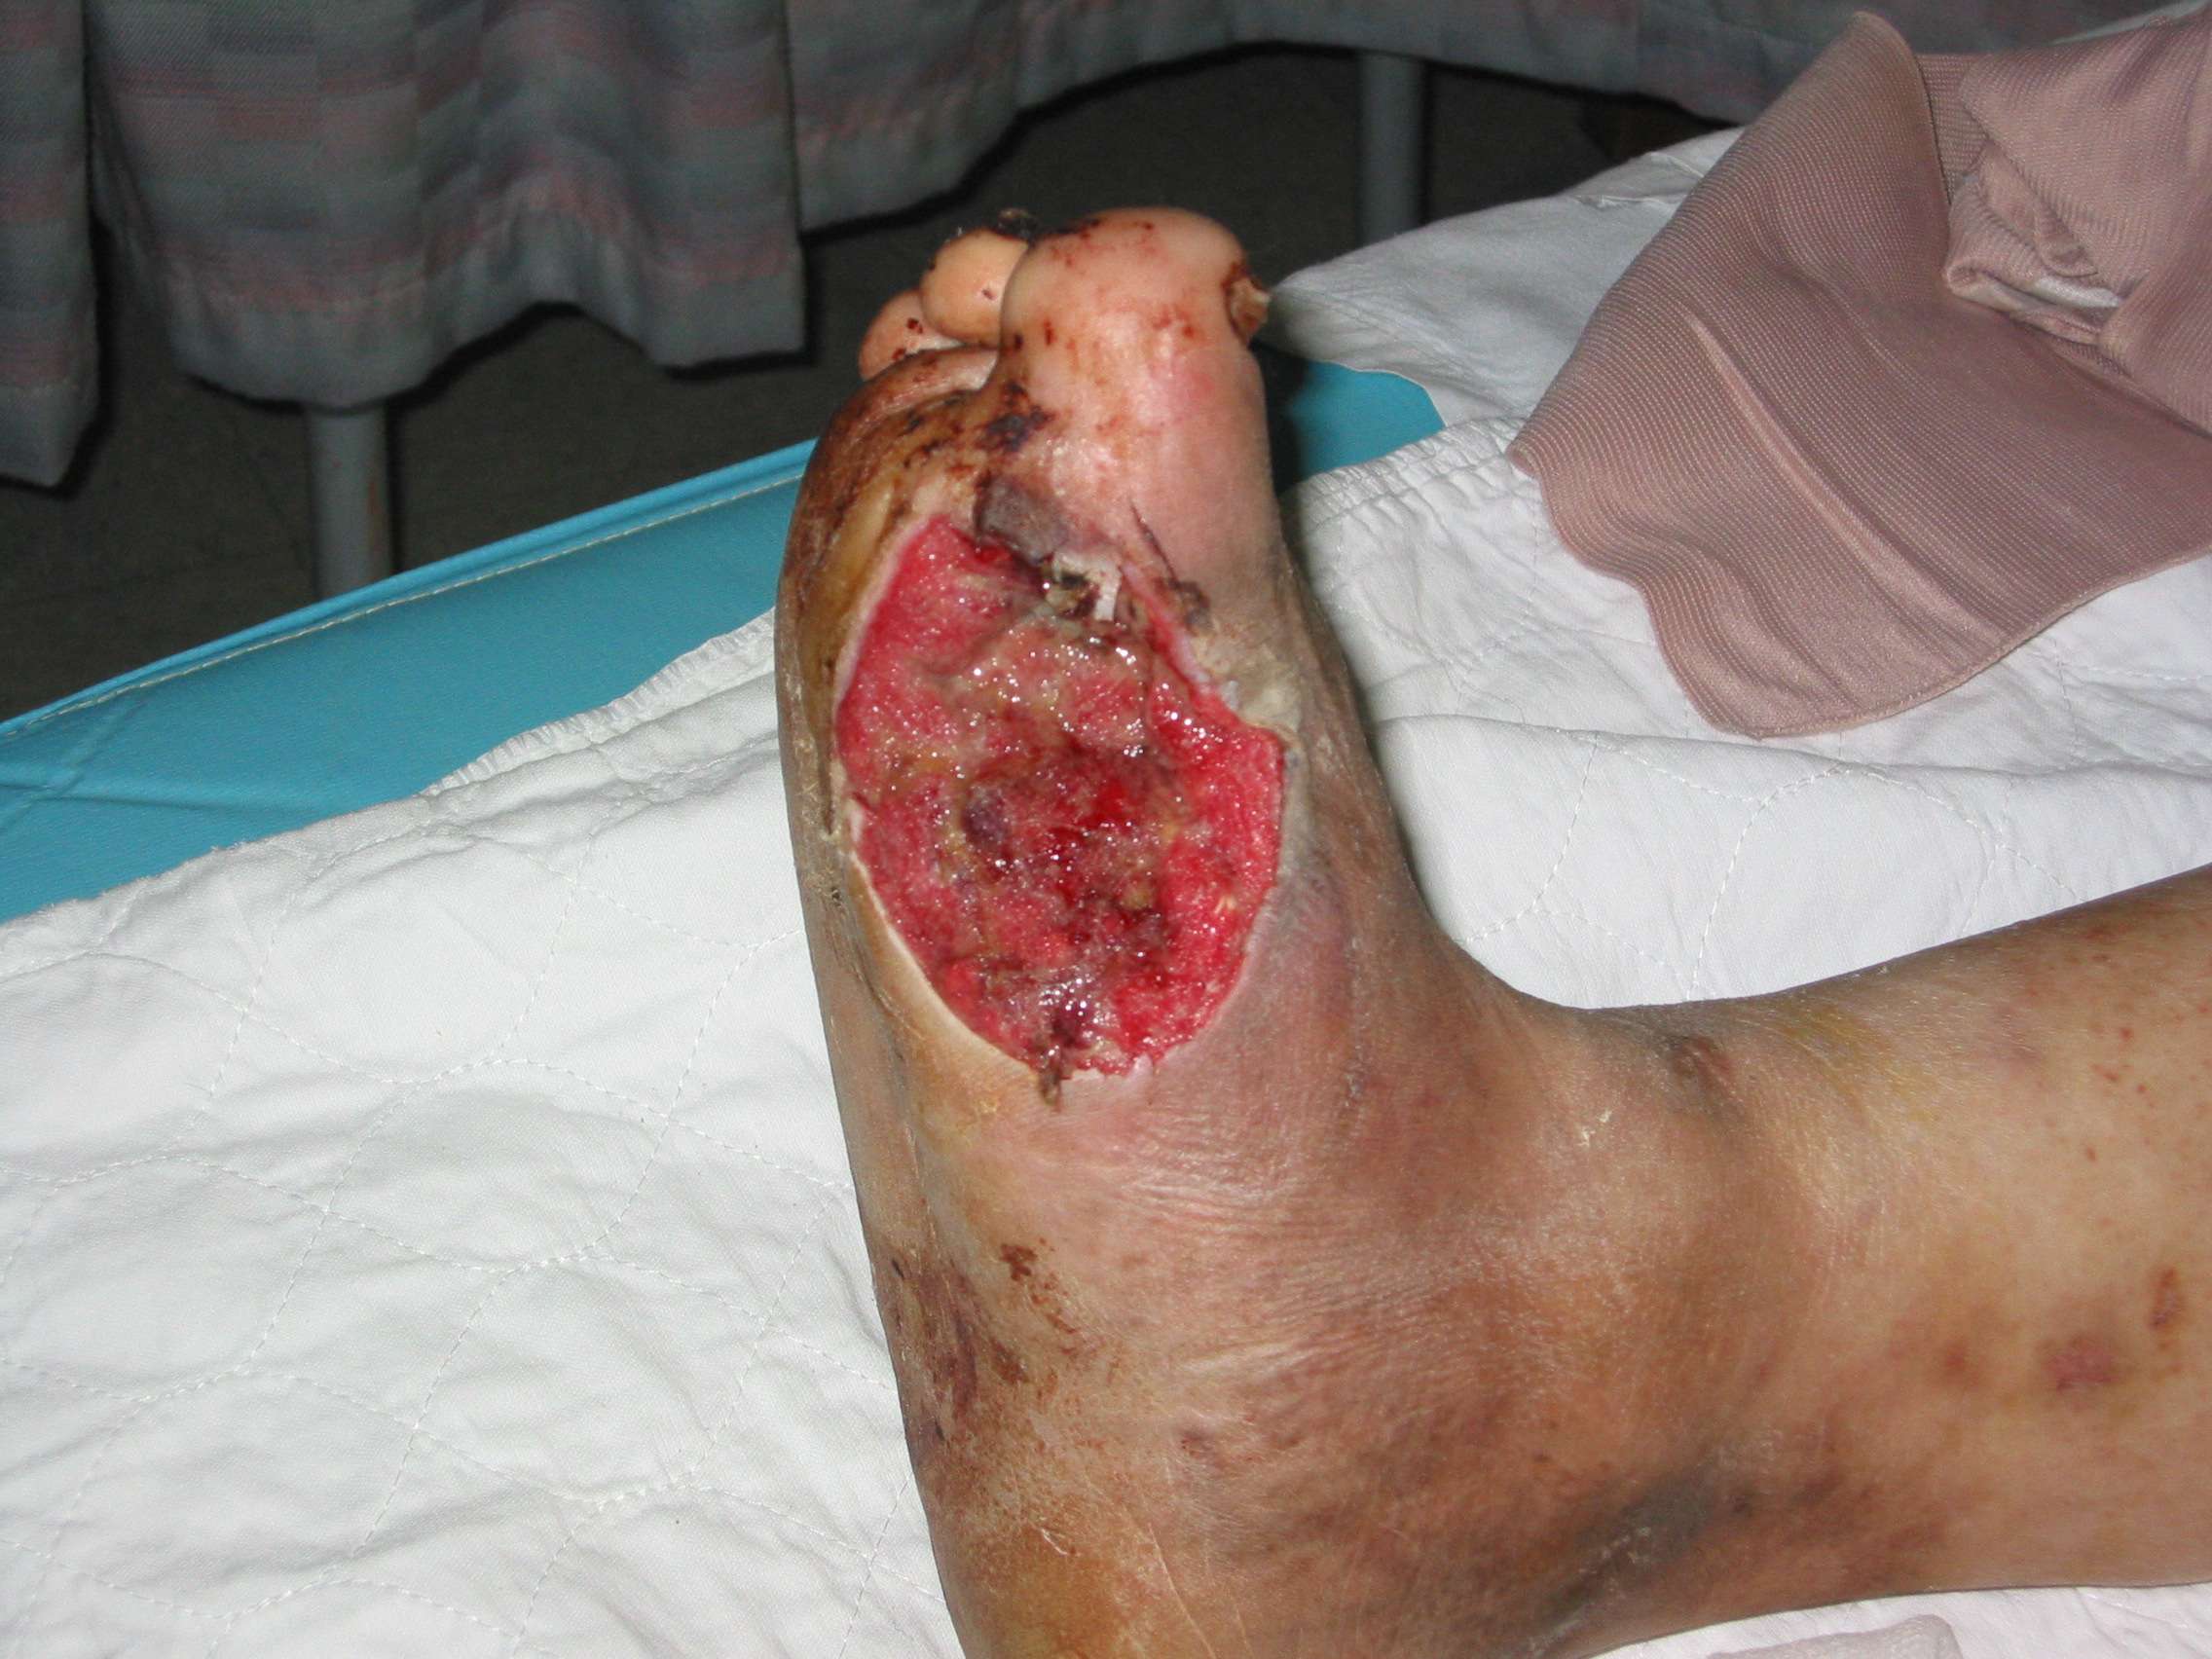 Amniotic graft diabetic foot ulcers